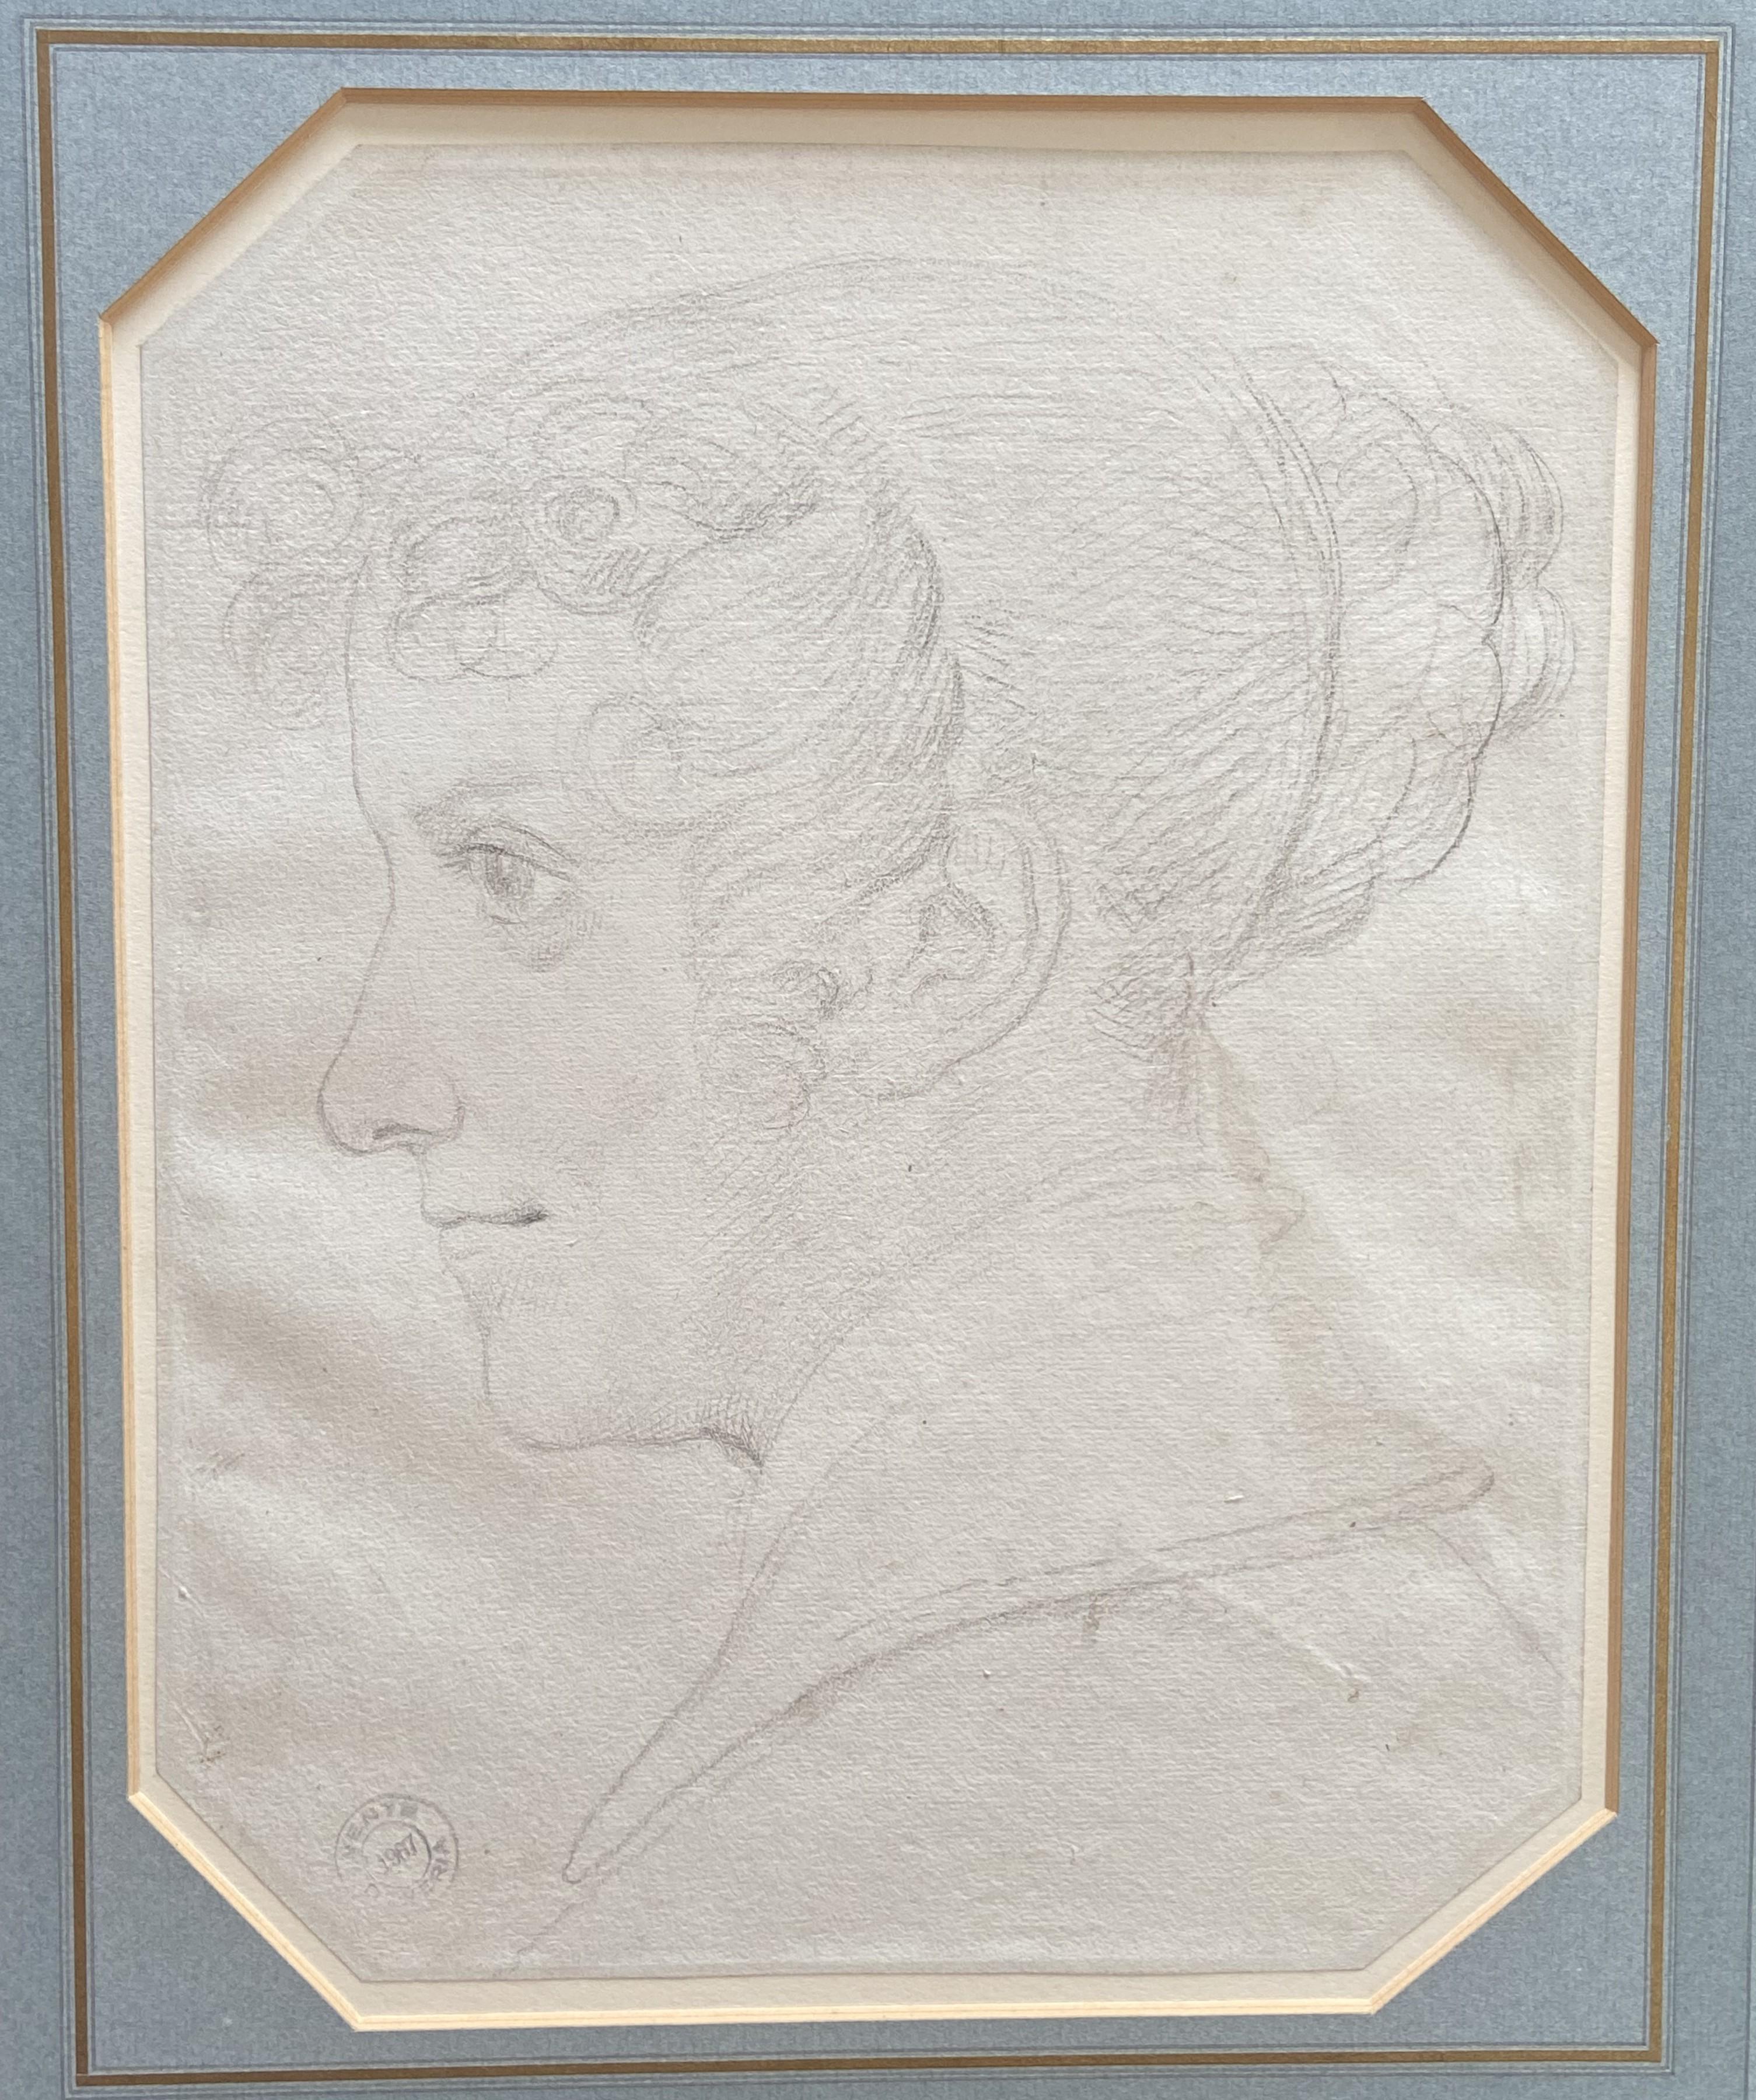 Achille Devria (1800-1857) Eine junge Frau im Profil zu sehen, Originalzeichnung – Art von Achille Devéria